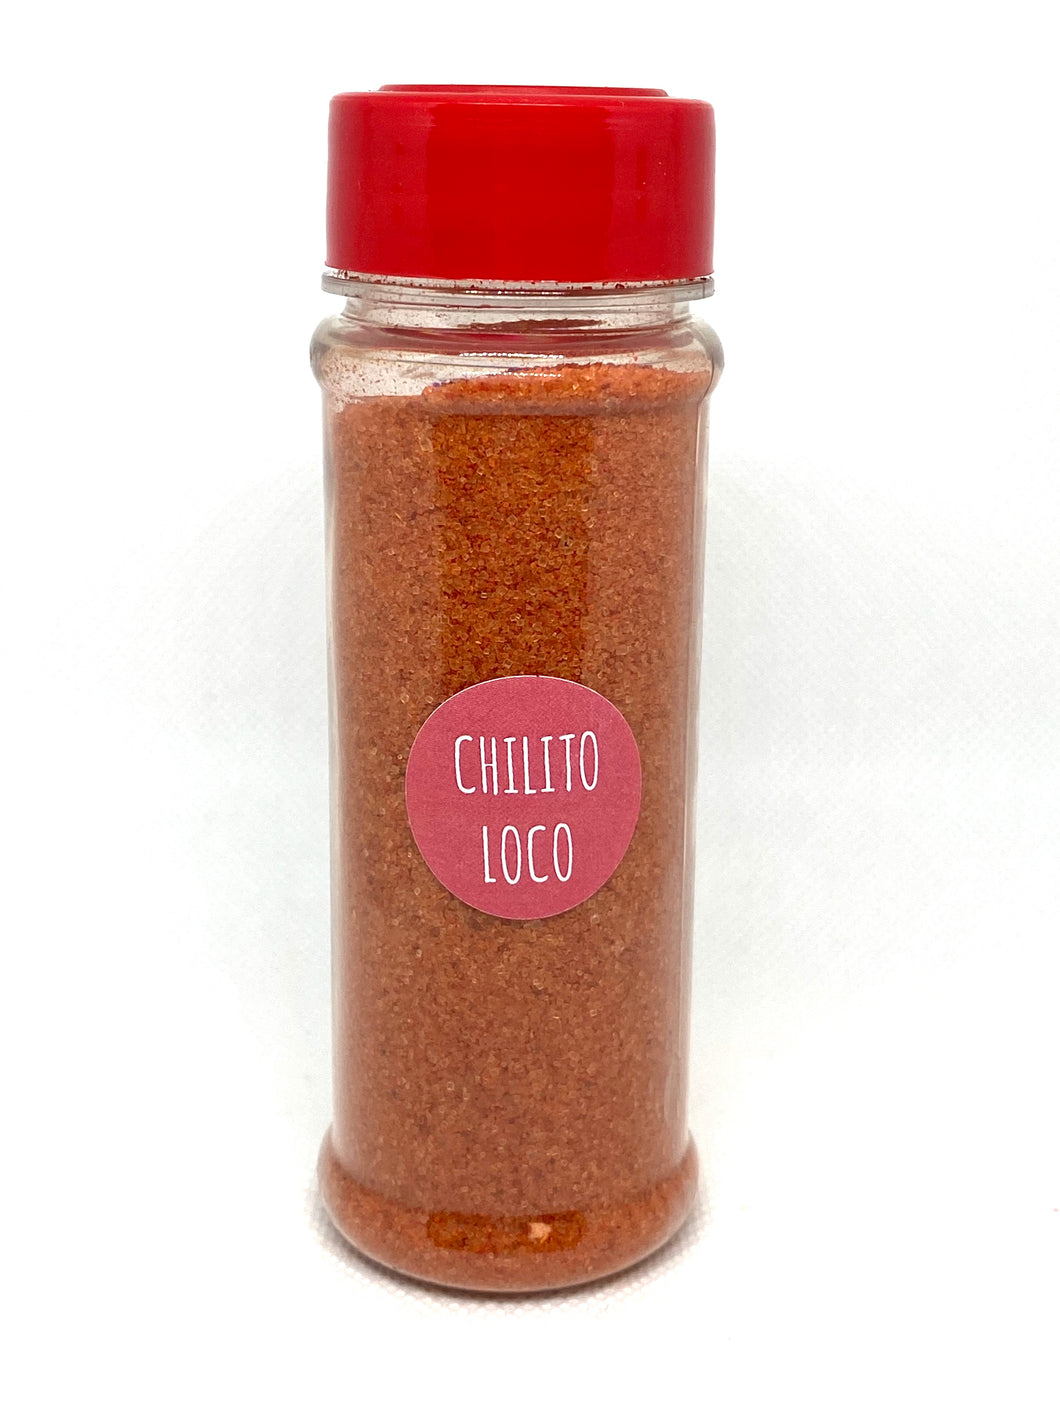 Chilitoloco Chile powder